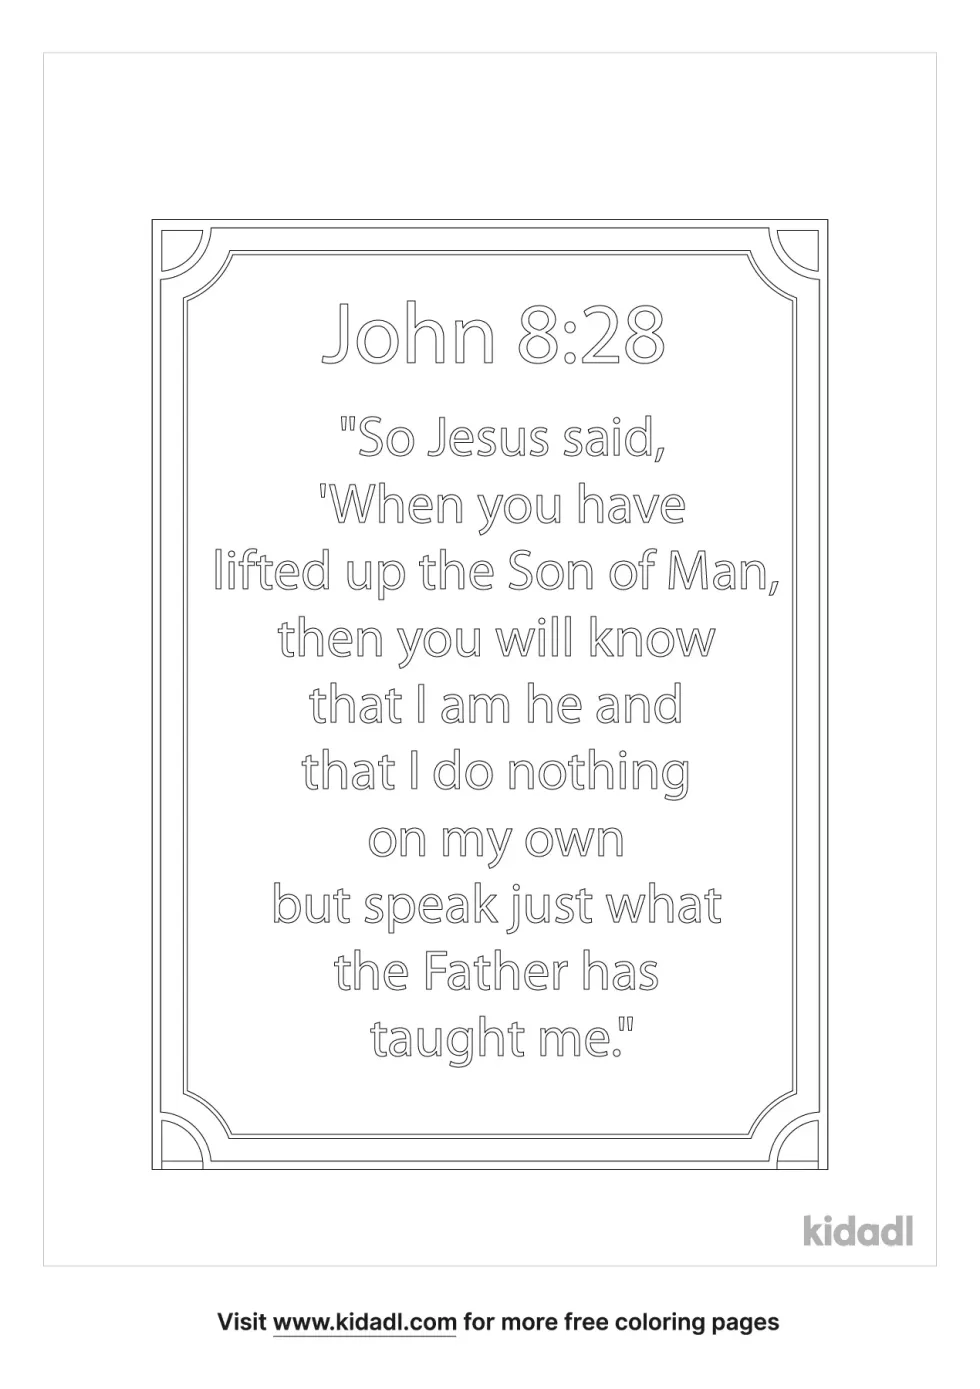 John 8:28